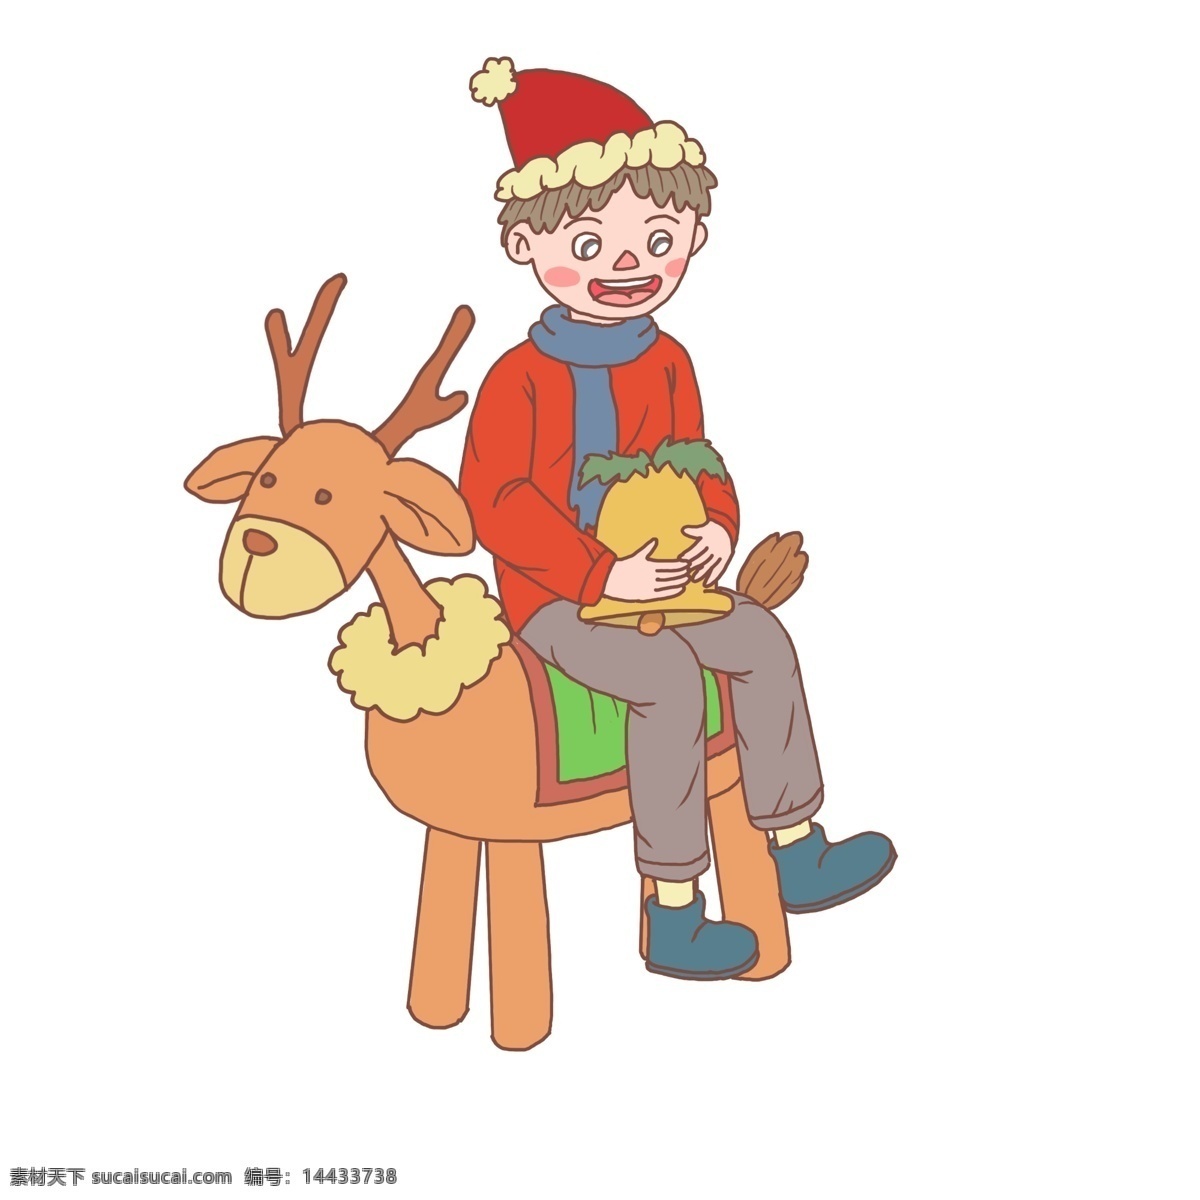 圣诞节 卡通 手绘 男孩 玩具 鹿 圣诞夜 女孩 礼物 圣诞礼物 圣诞帽子 圣诞快乐 圣诞老人 圣诞树 糖果 玩具鹿